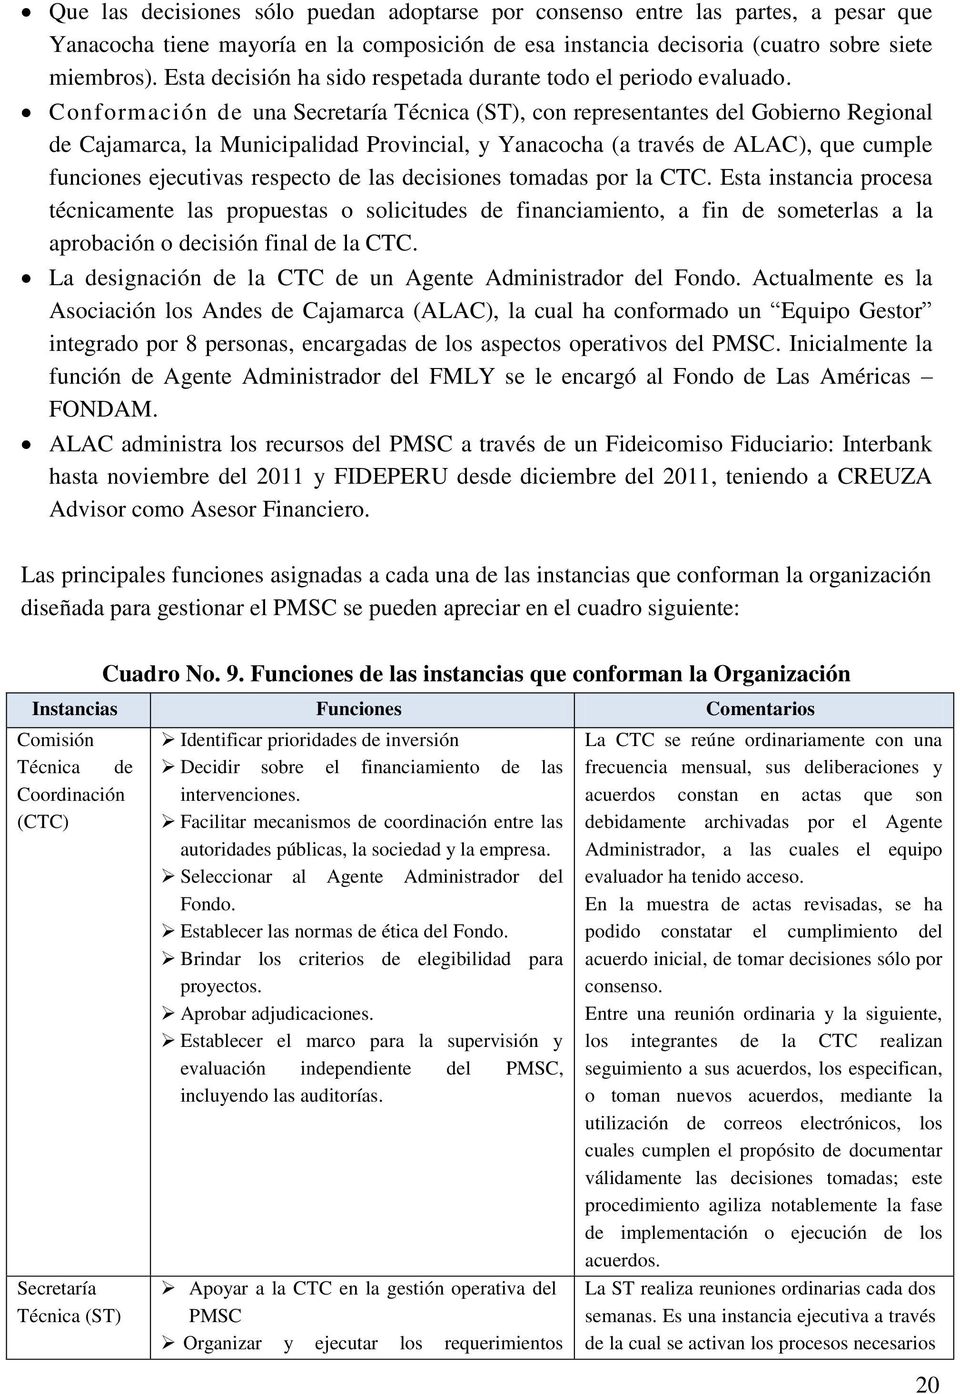 Conformación de una Secretaría Técnica (ST), con representantes del Gobierno Regional de Cajamarca, la Municipalidad Provincial, y Yanacocha (a través de ALAC), que cumple funciones ejecutivas